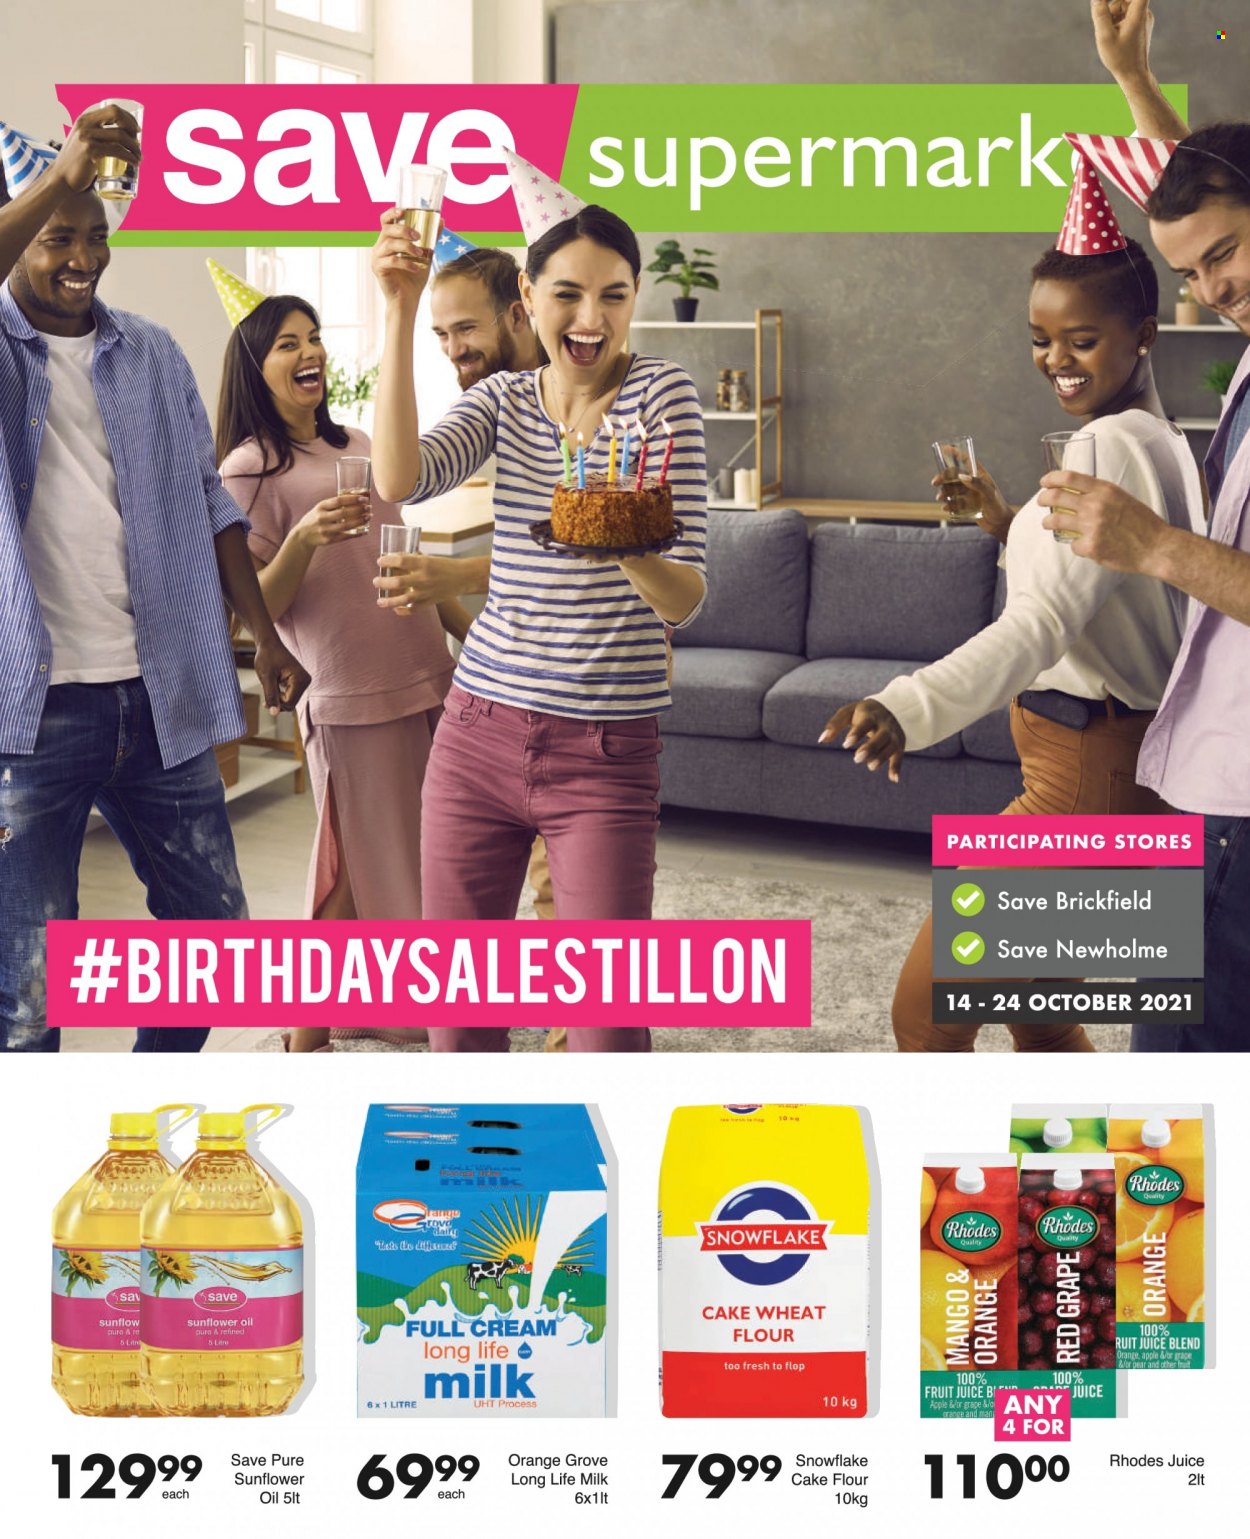 Save supermarket specials - 10.14.2021 - 10.24.2021. 